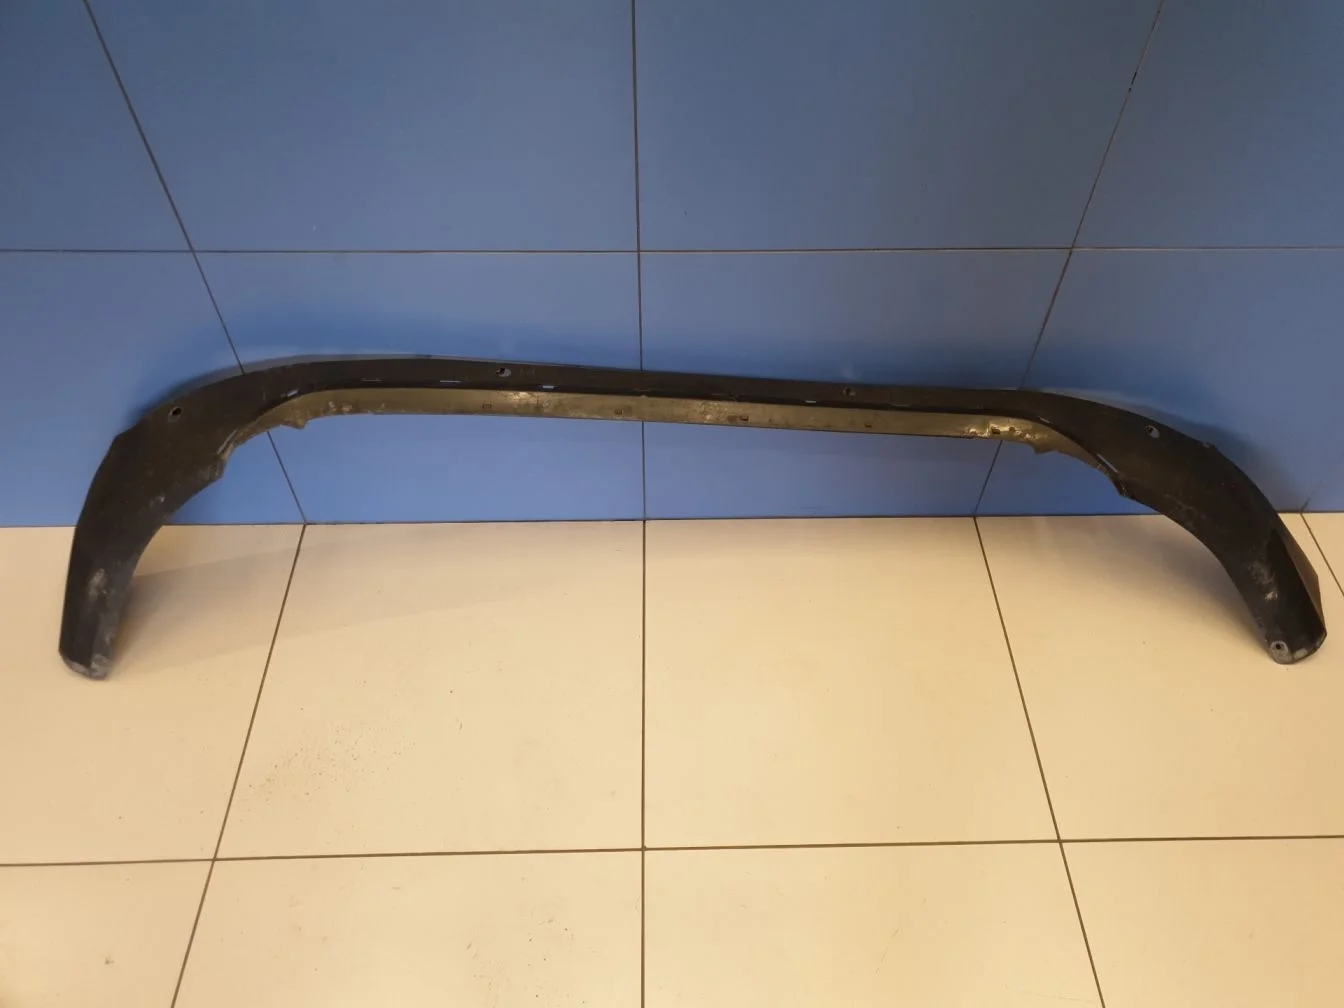 Юбка заднего бампера для Toyota RAV 4 2013-2019